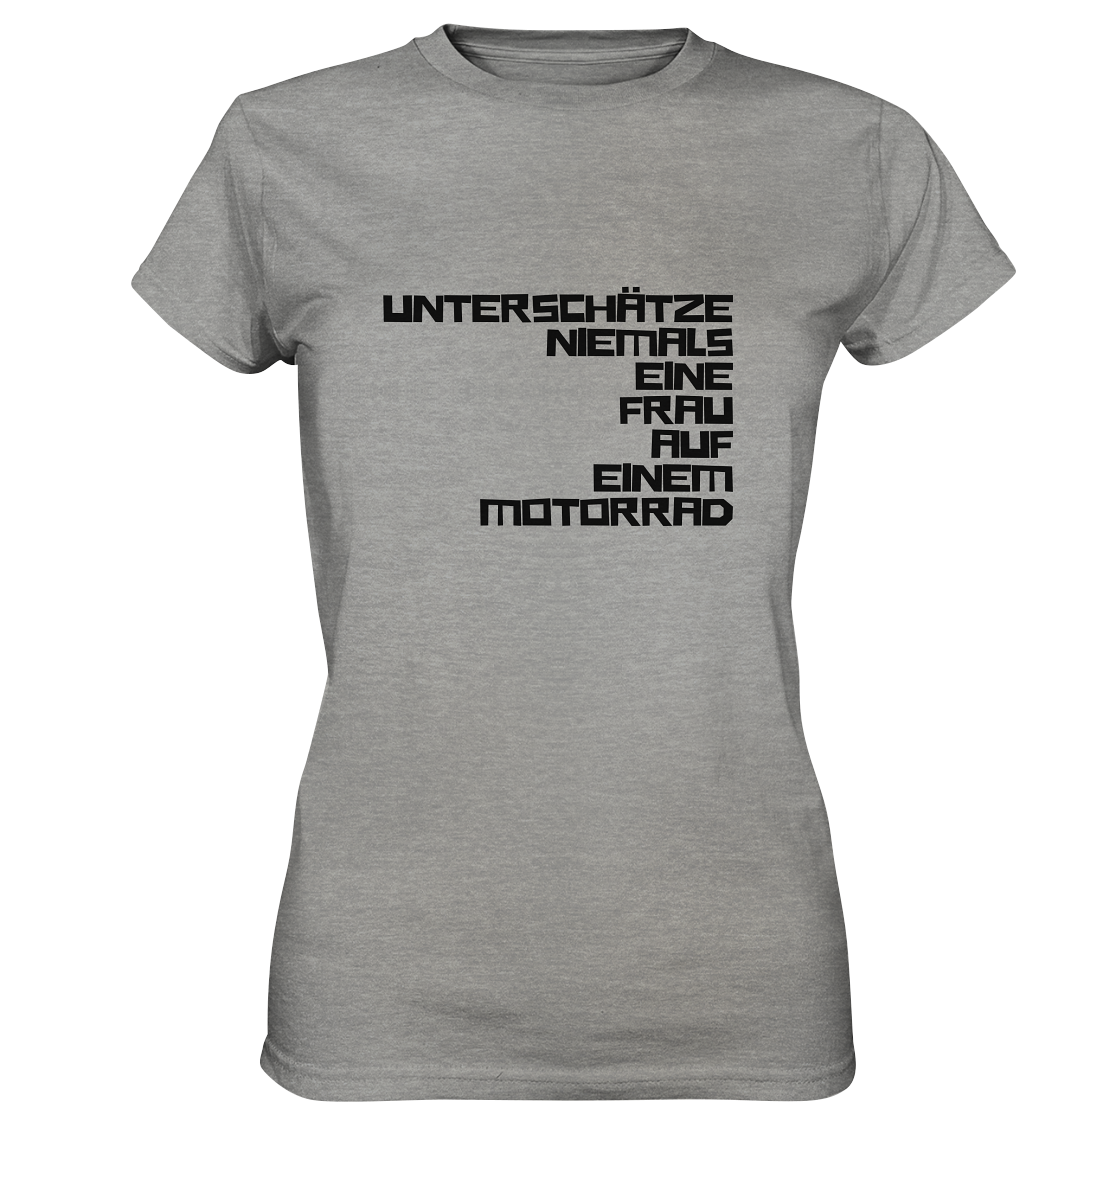 Damen-T-Shirt, Rundhals, mit Aufdruck "Unterschätze niemals eine Frau auf einem Motorrad", hell grau meliert